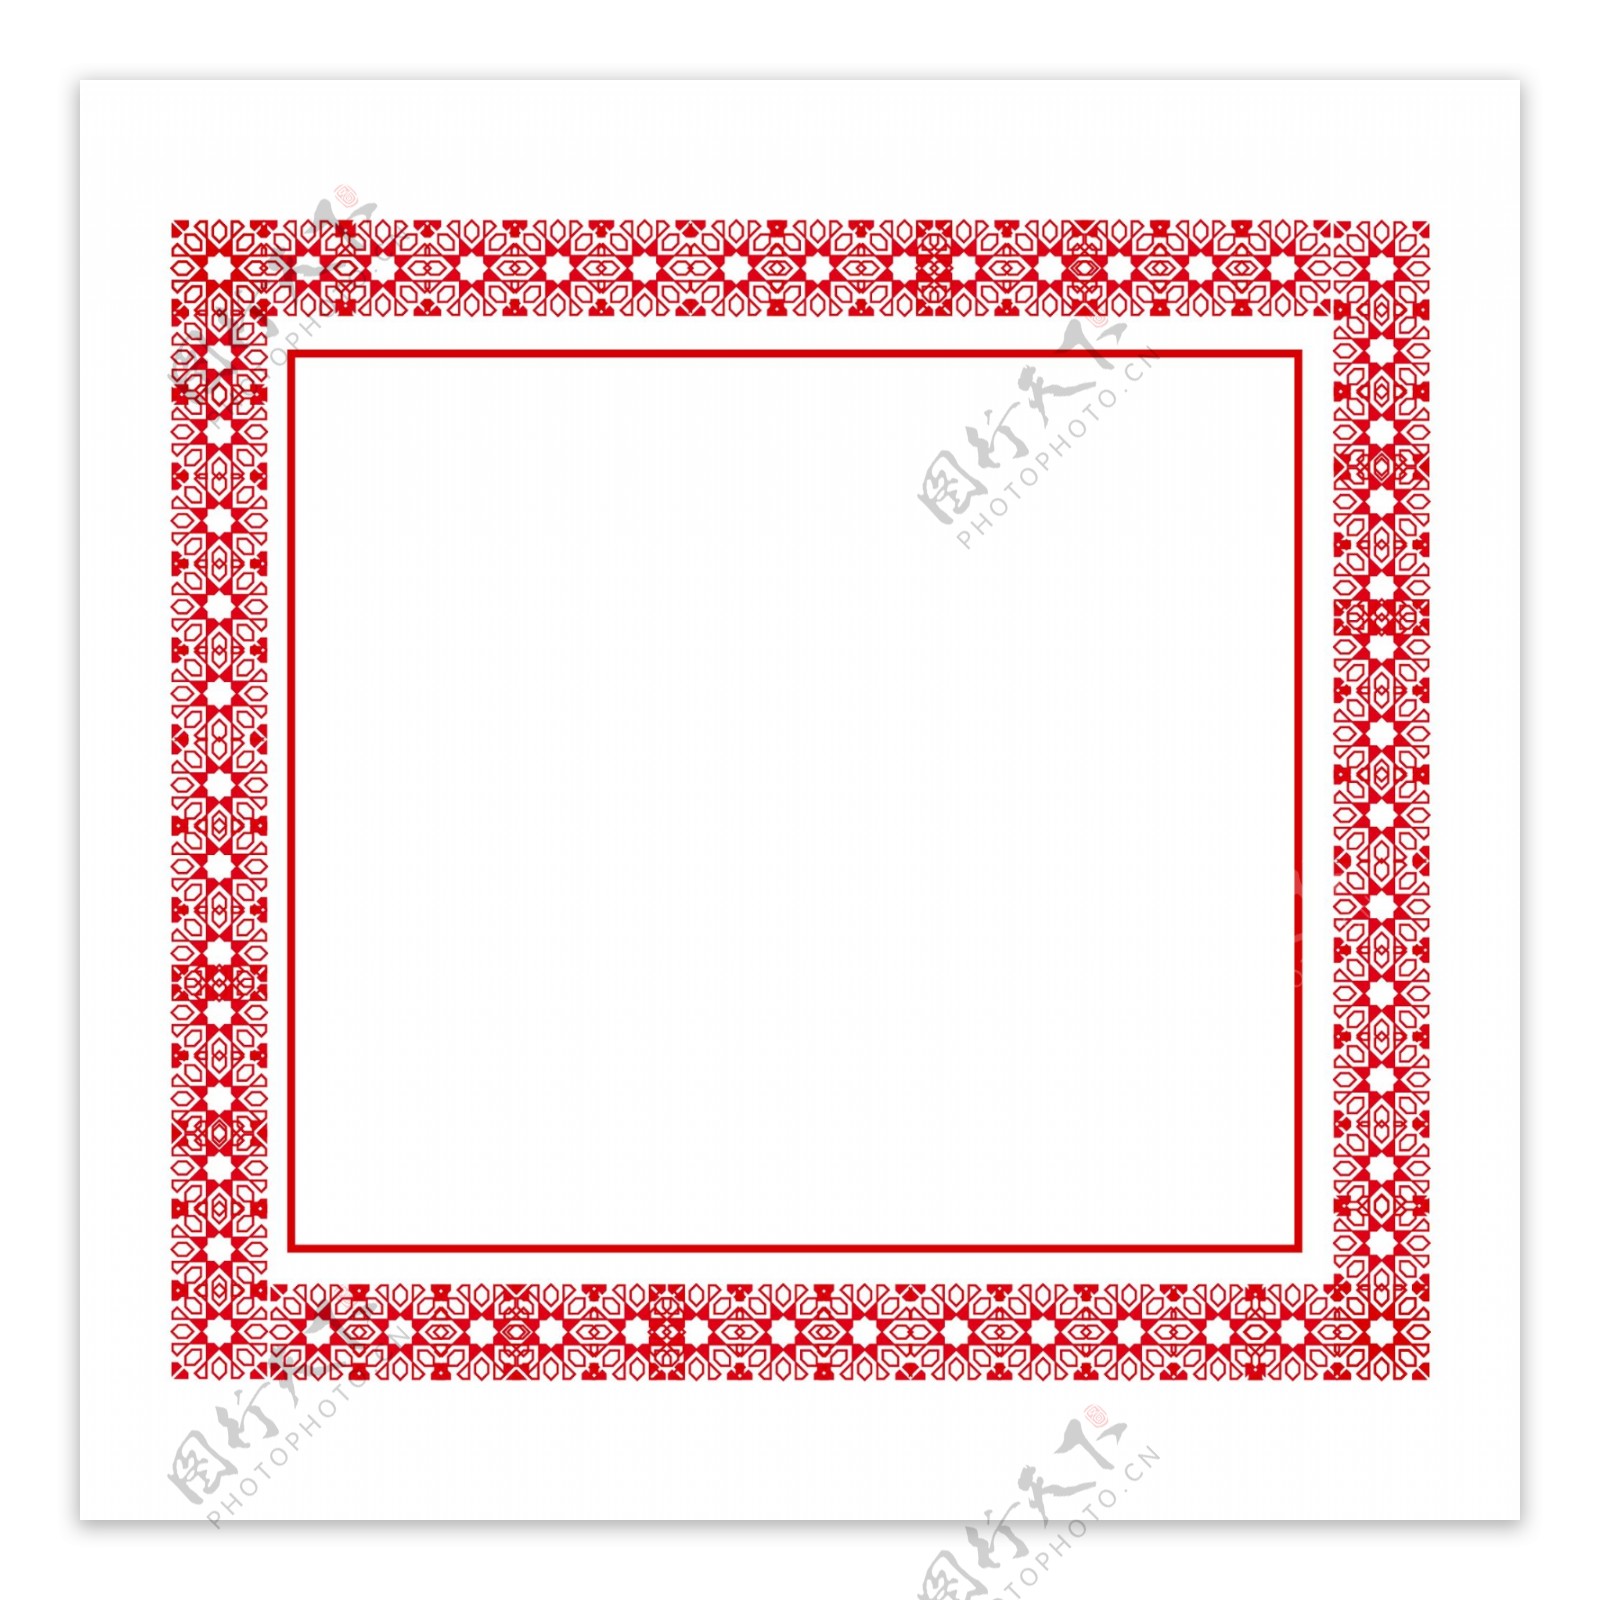 中国风边框红色装饰素材设计